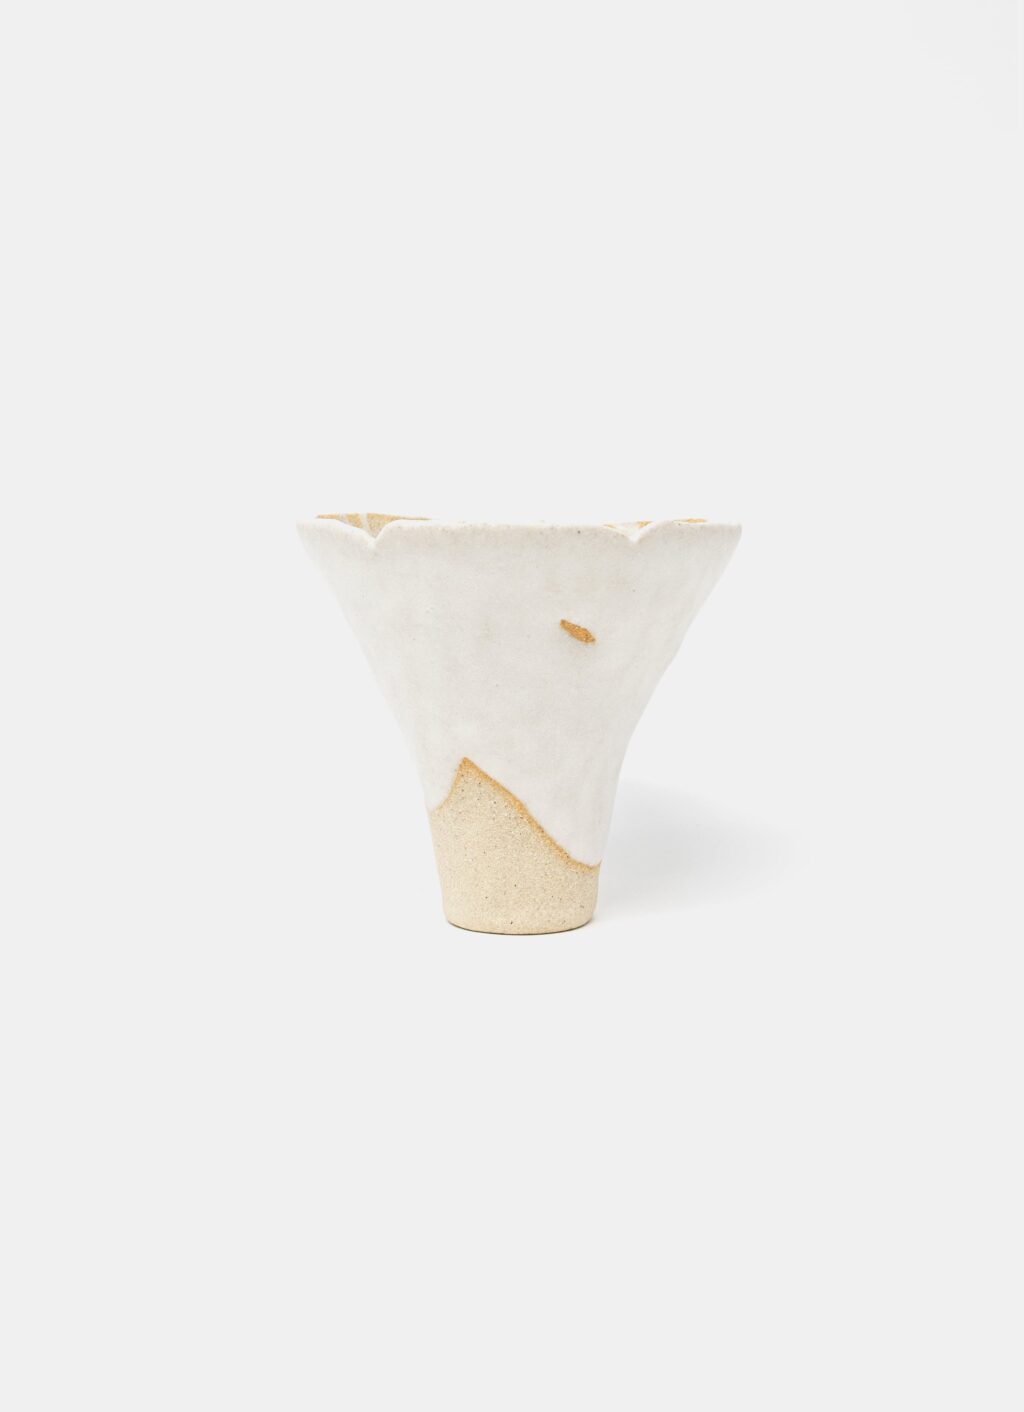 Mano Mani - Ikebana Vase - Light Stoneware and white glaze - 2